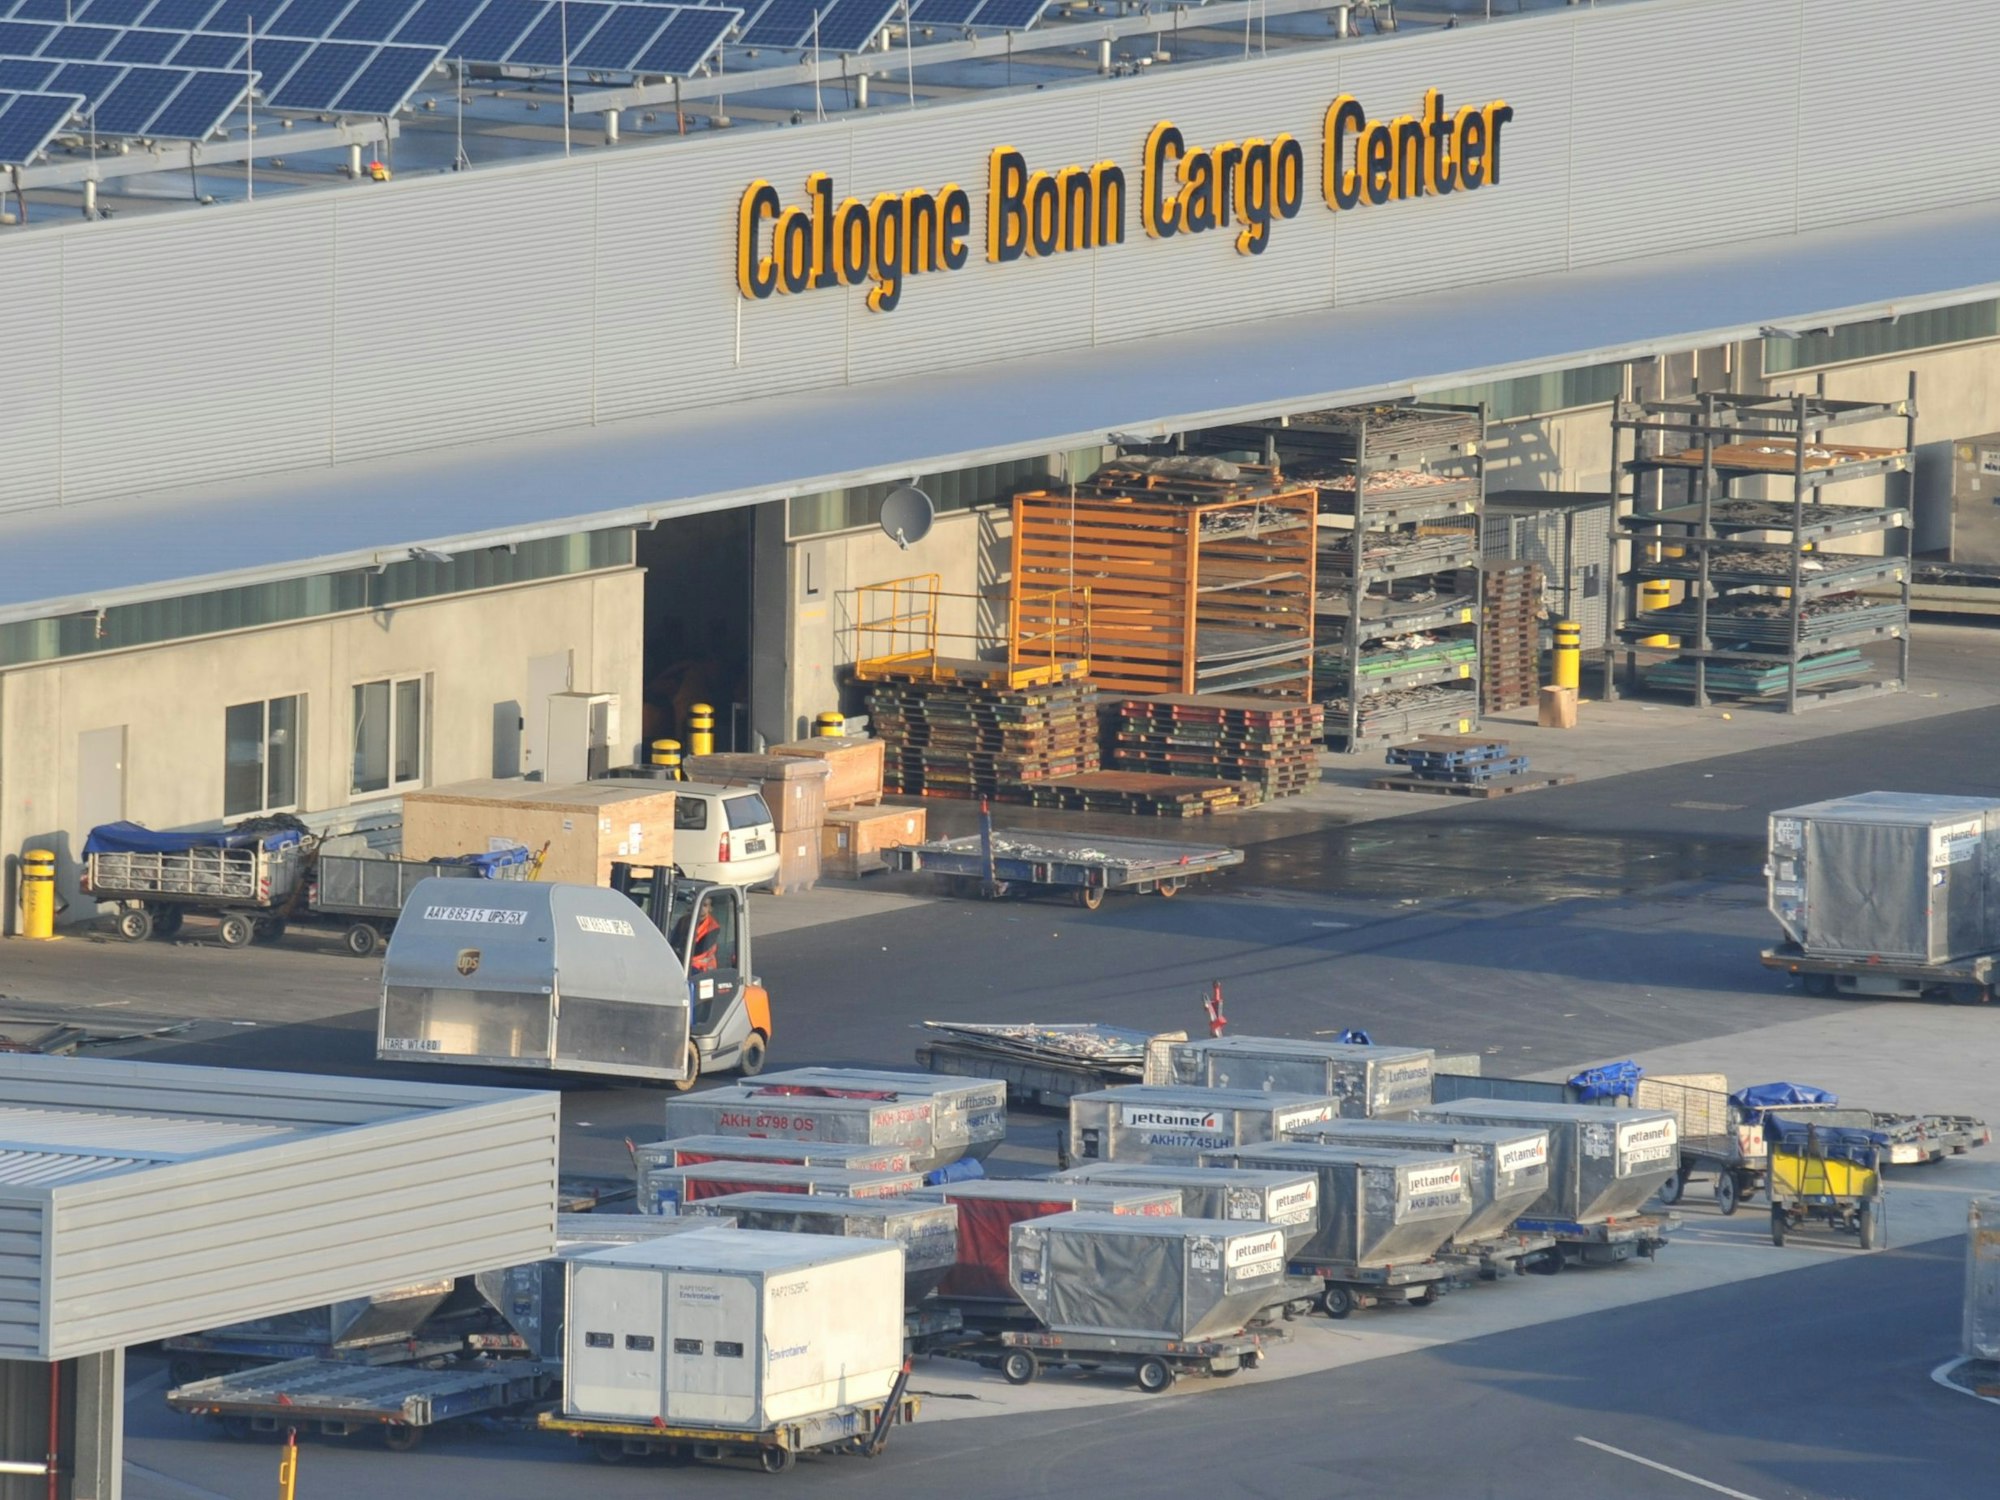 Vor einem Gebäude mit der Aufschrift „Cologne Bonn Cargo Center“ stehen zahlreiche Paletten, teilweise mit abgedeckter Fracht.